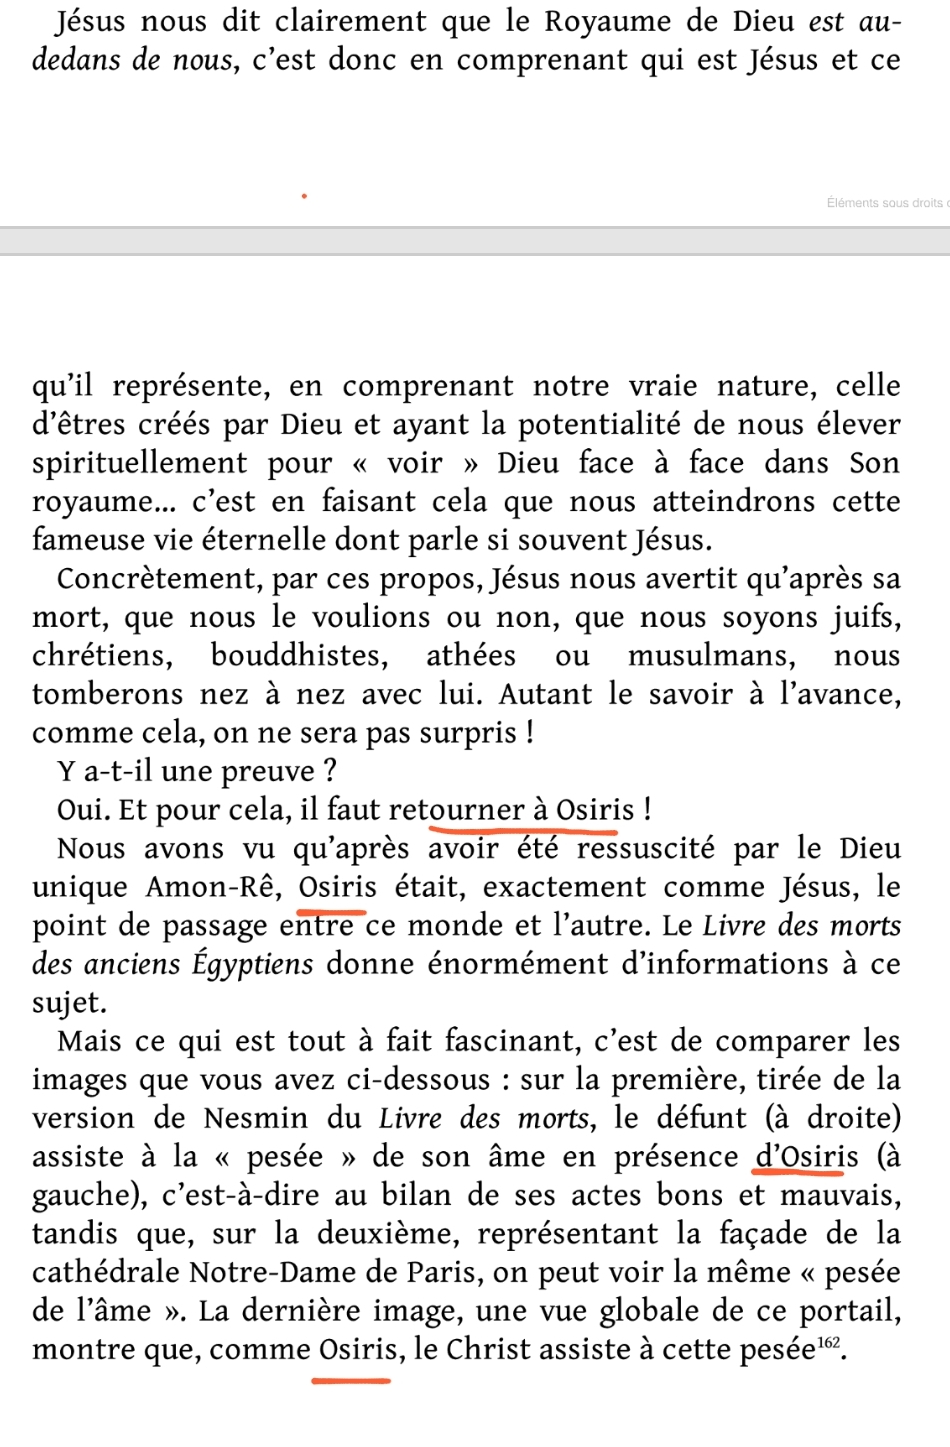 La franc-maçonnerie, la Gnose et le gnosticisme.  - Page 6 Scree601